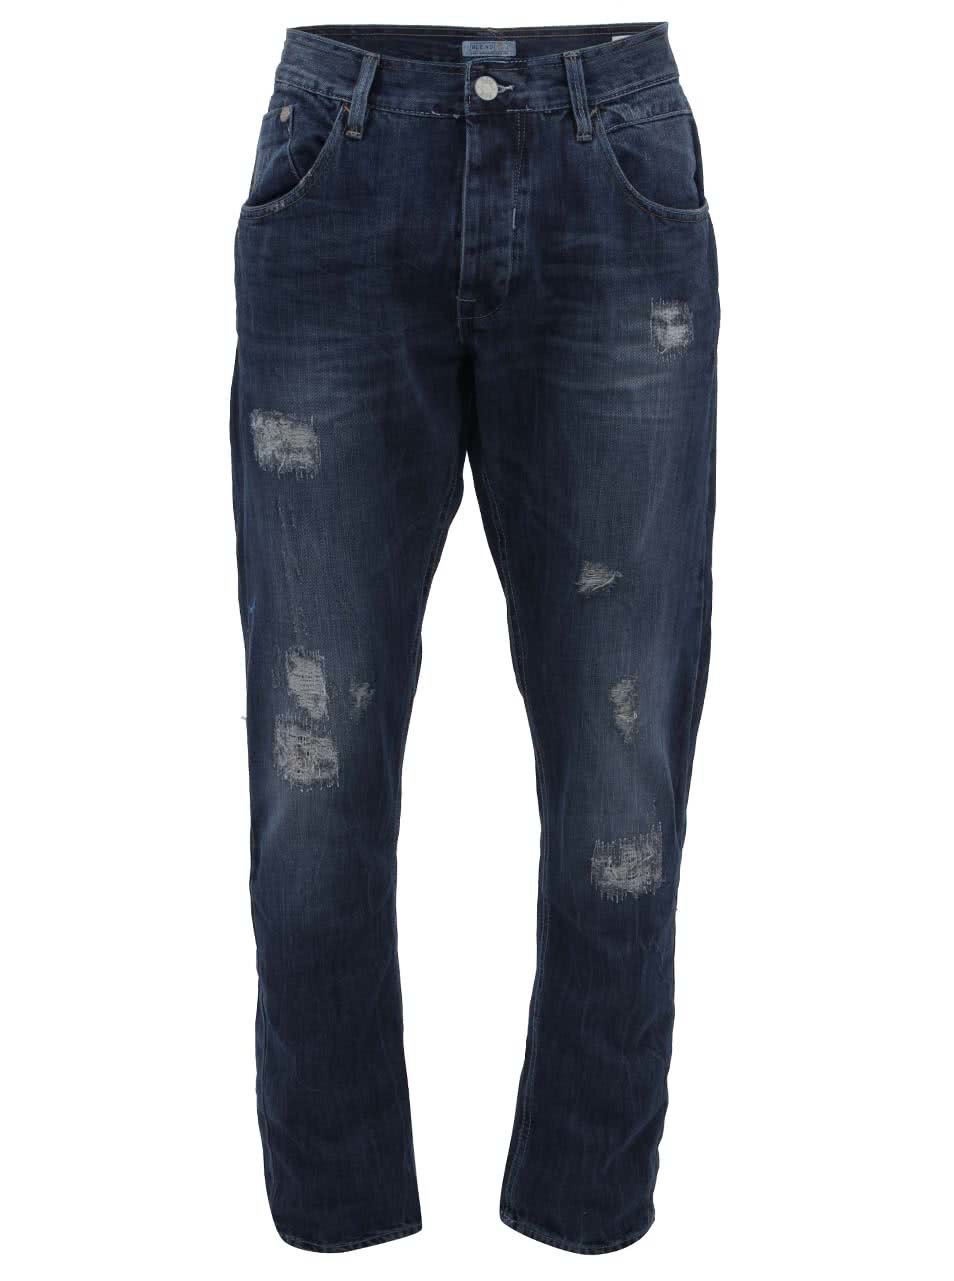 Tmavě modré džíny s prošívaným efektem Blend